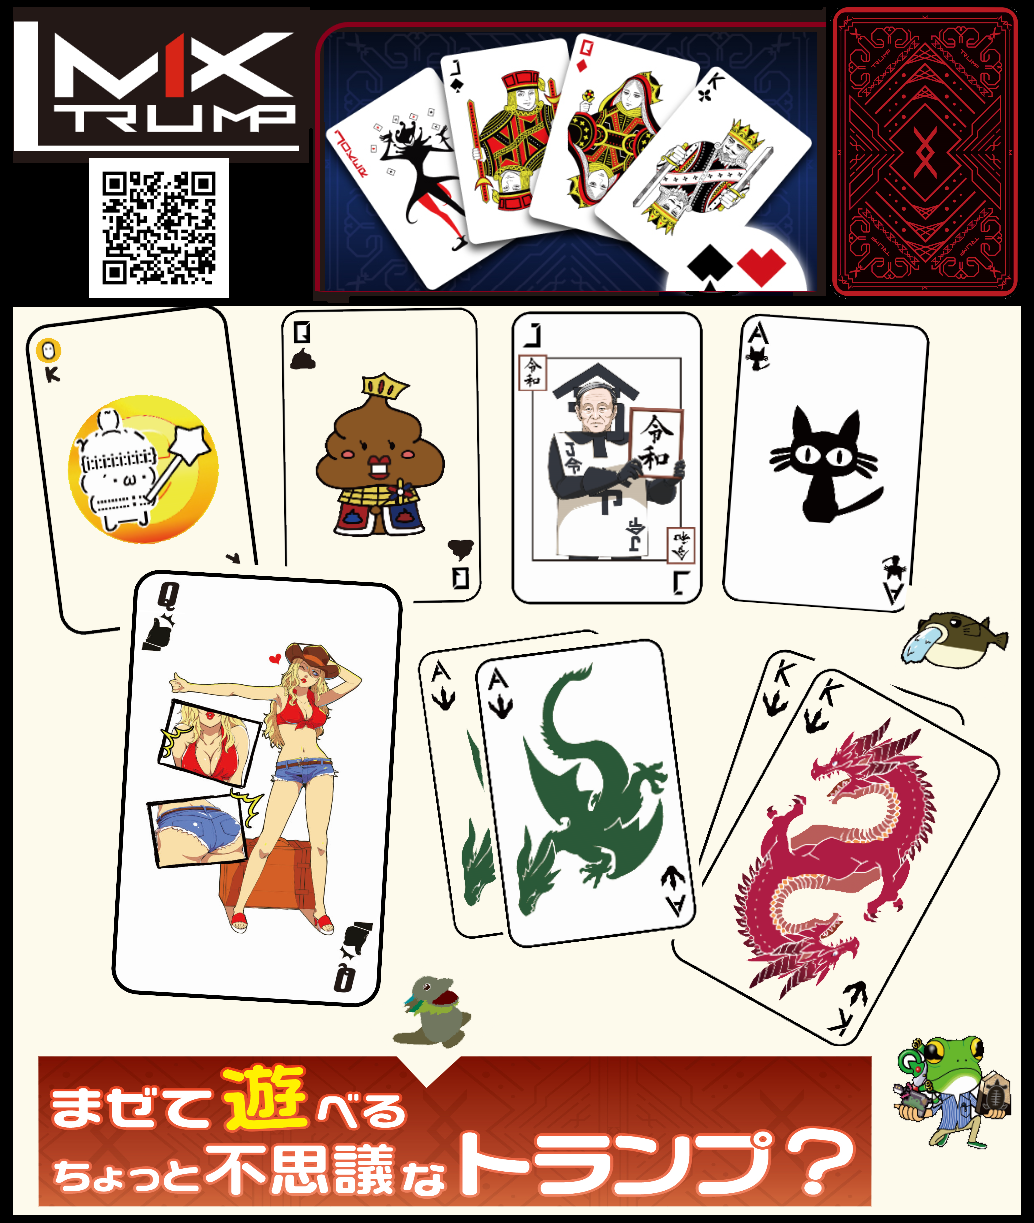 ミックストランプ 4連ガチャ ランダム4パック 無地カード1パック ジョーカー黒 赤1枚 Mix Trump ミックストランプ 公式 Webショップ